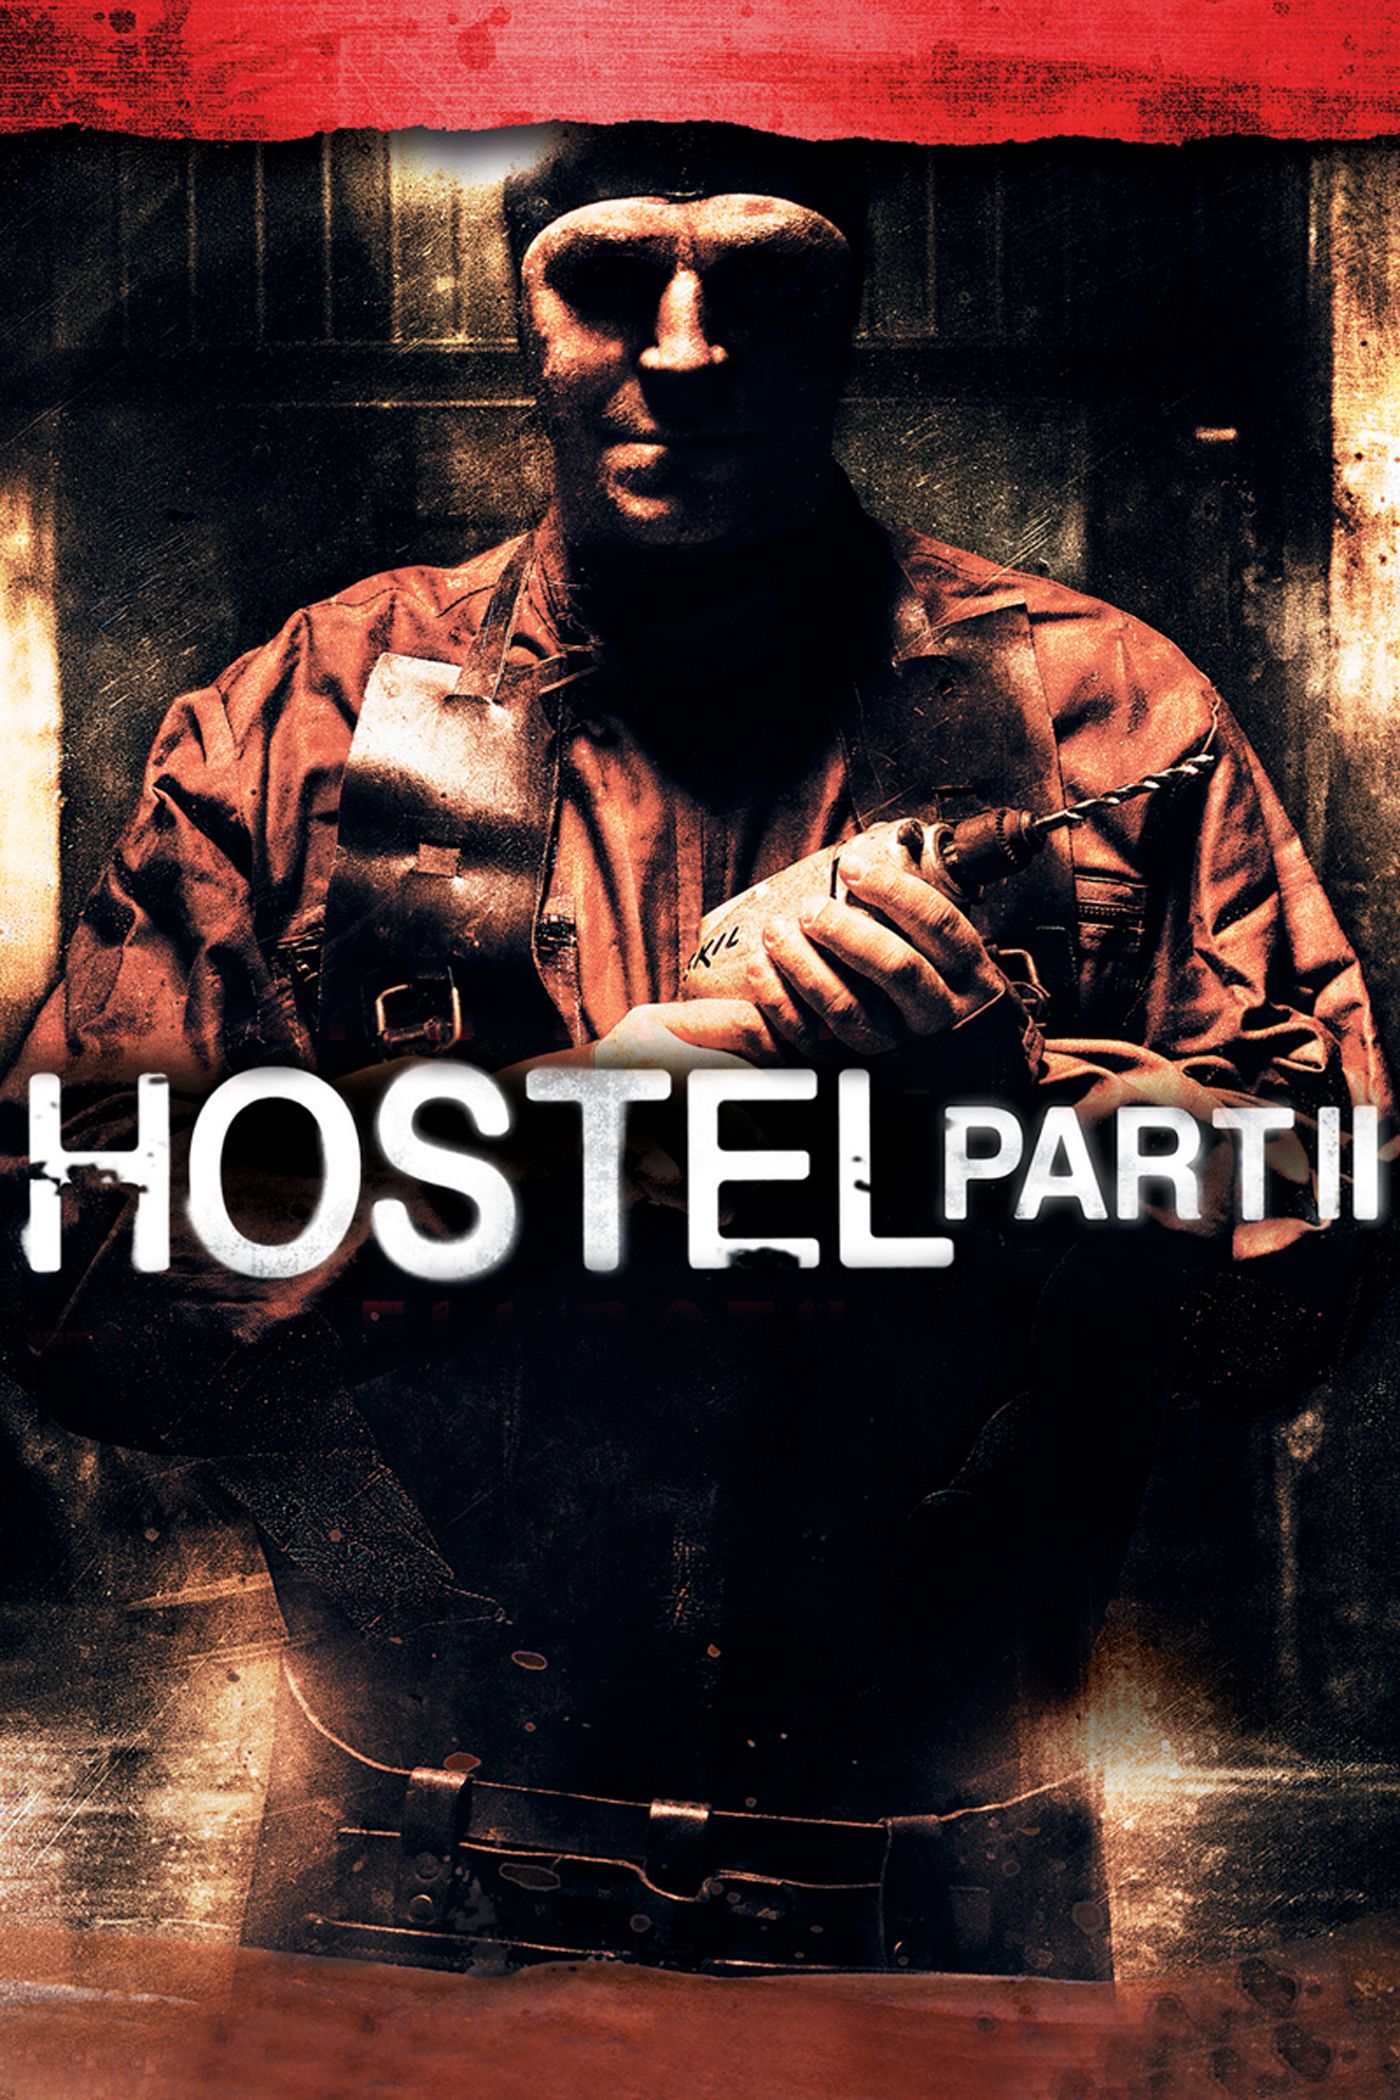 Hostel part 2 movie download